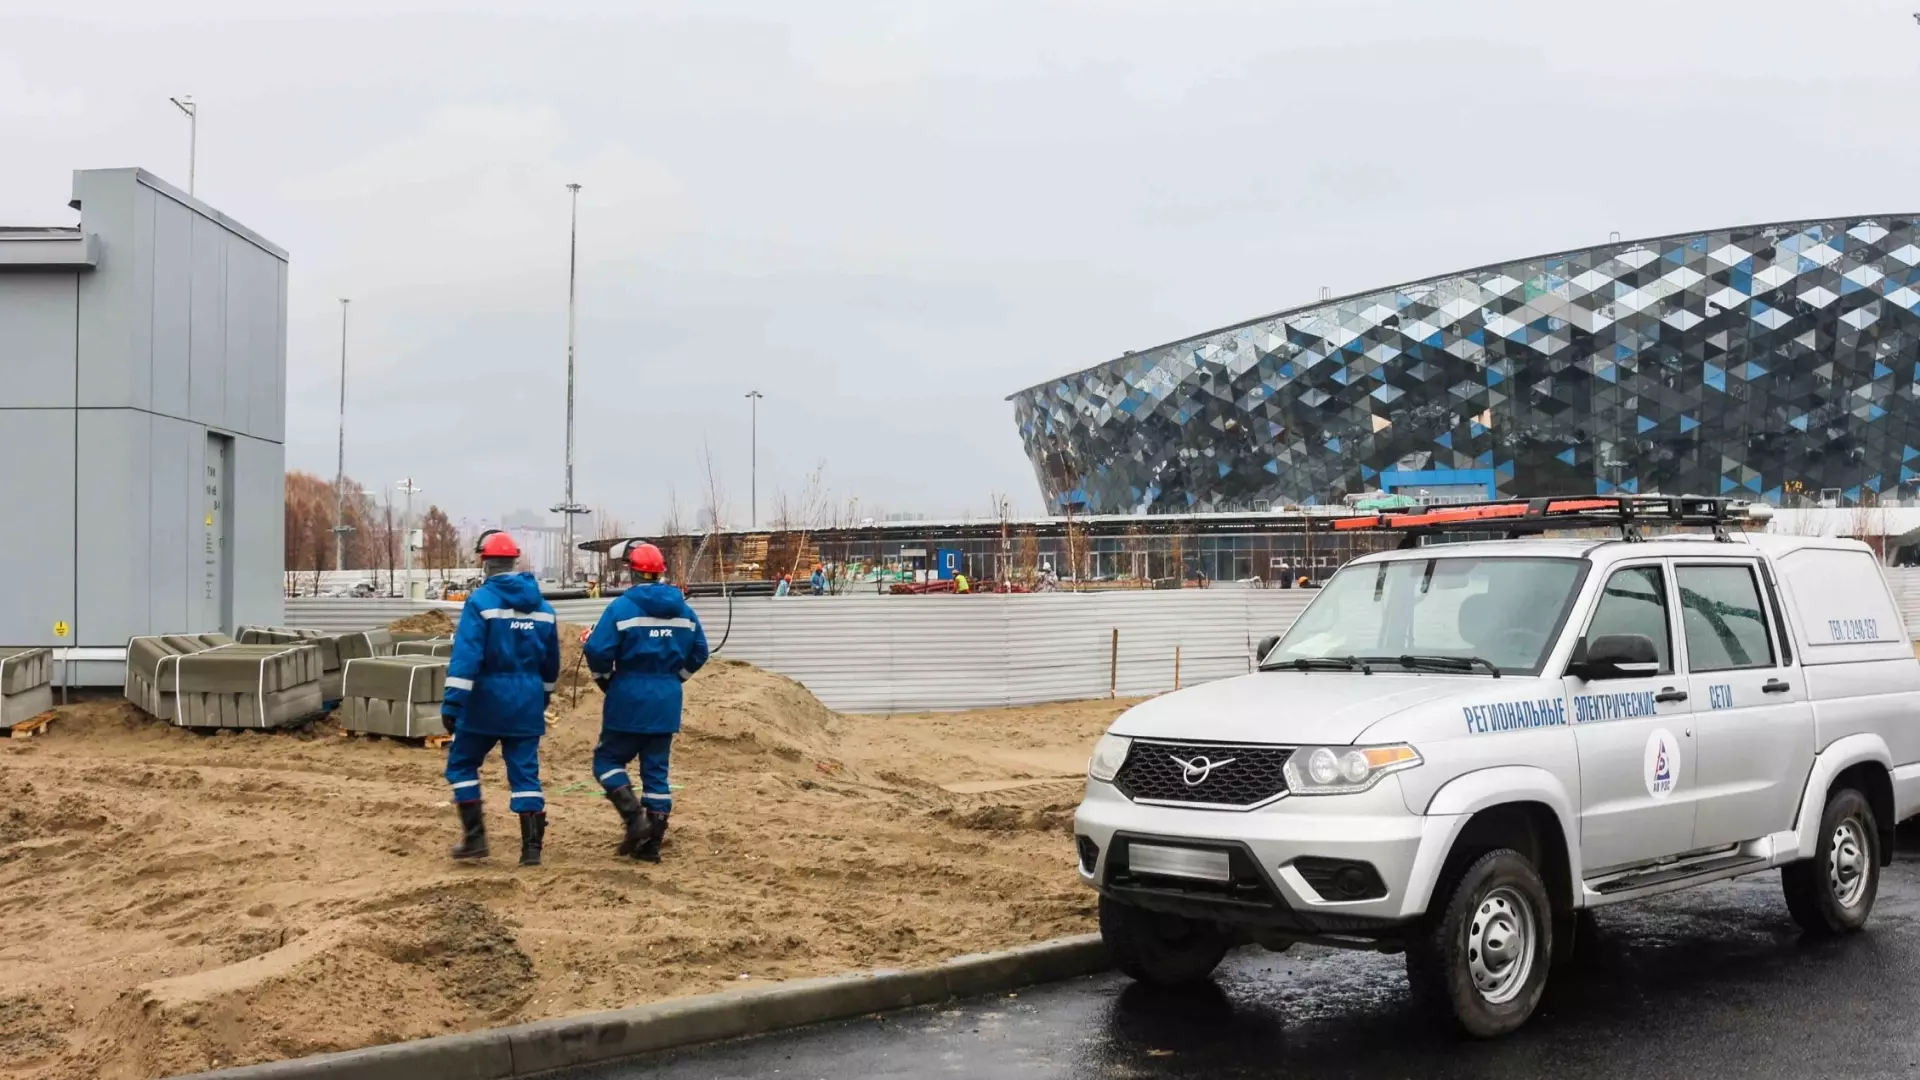 "Сибирь Арена" общей мощностью более 7 мегаватт - один из крупнейших объектов, над которыми работали энергетики АО "РЭС".